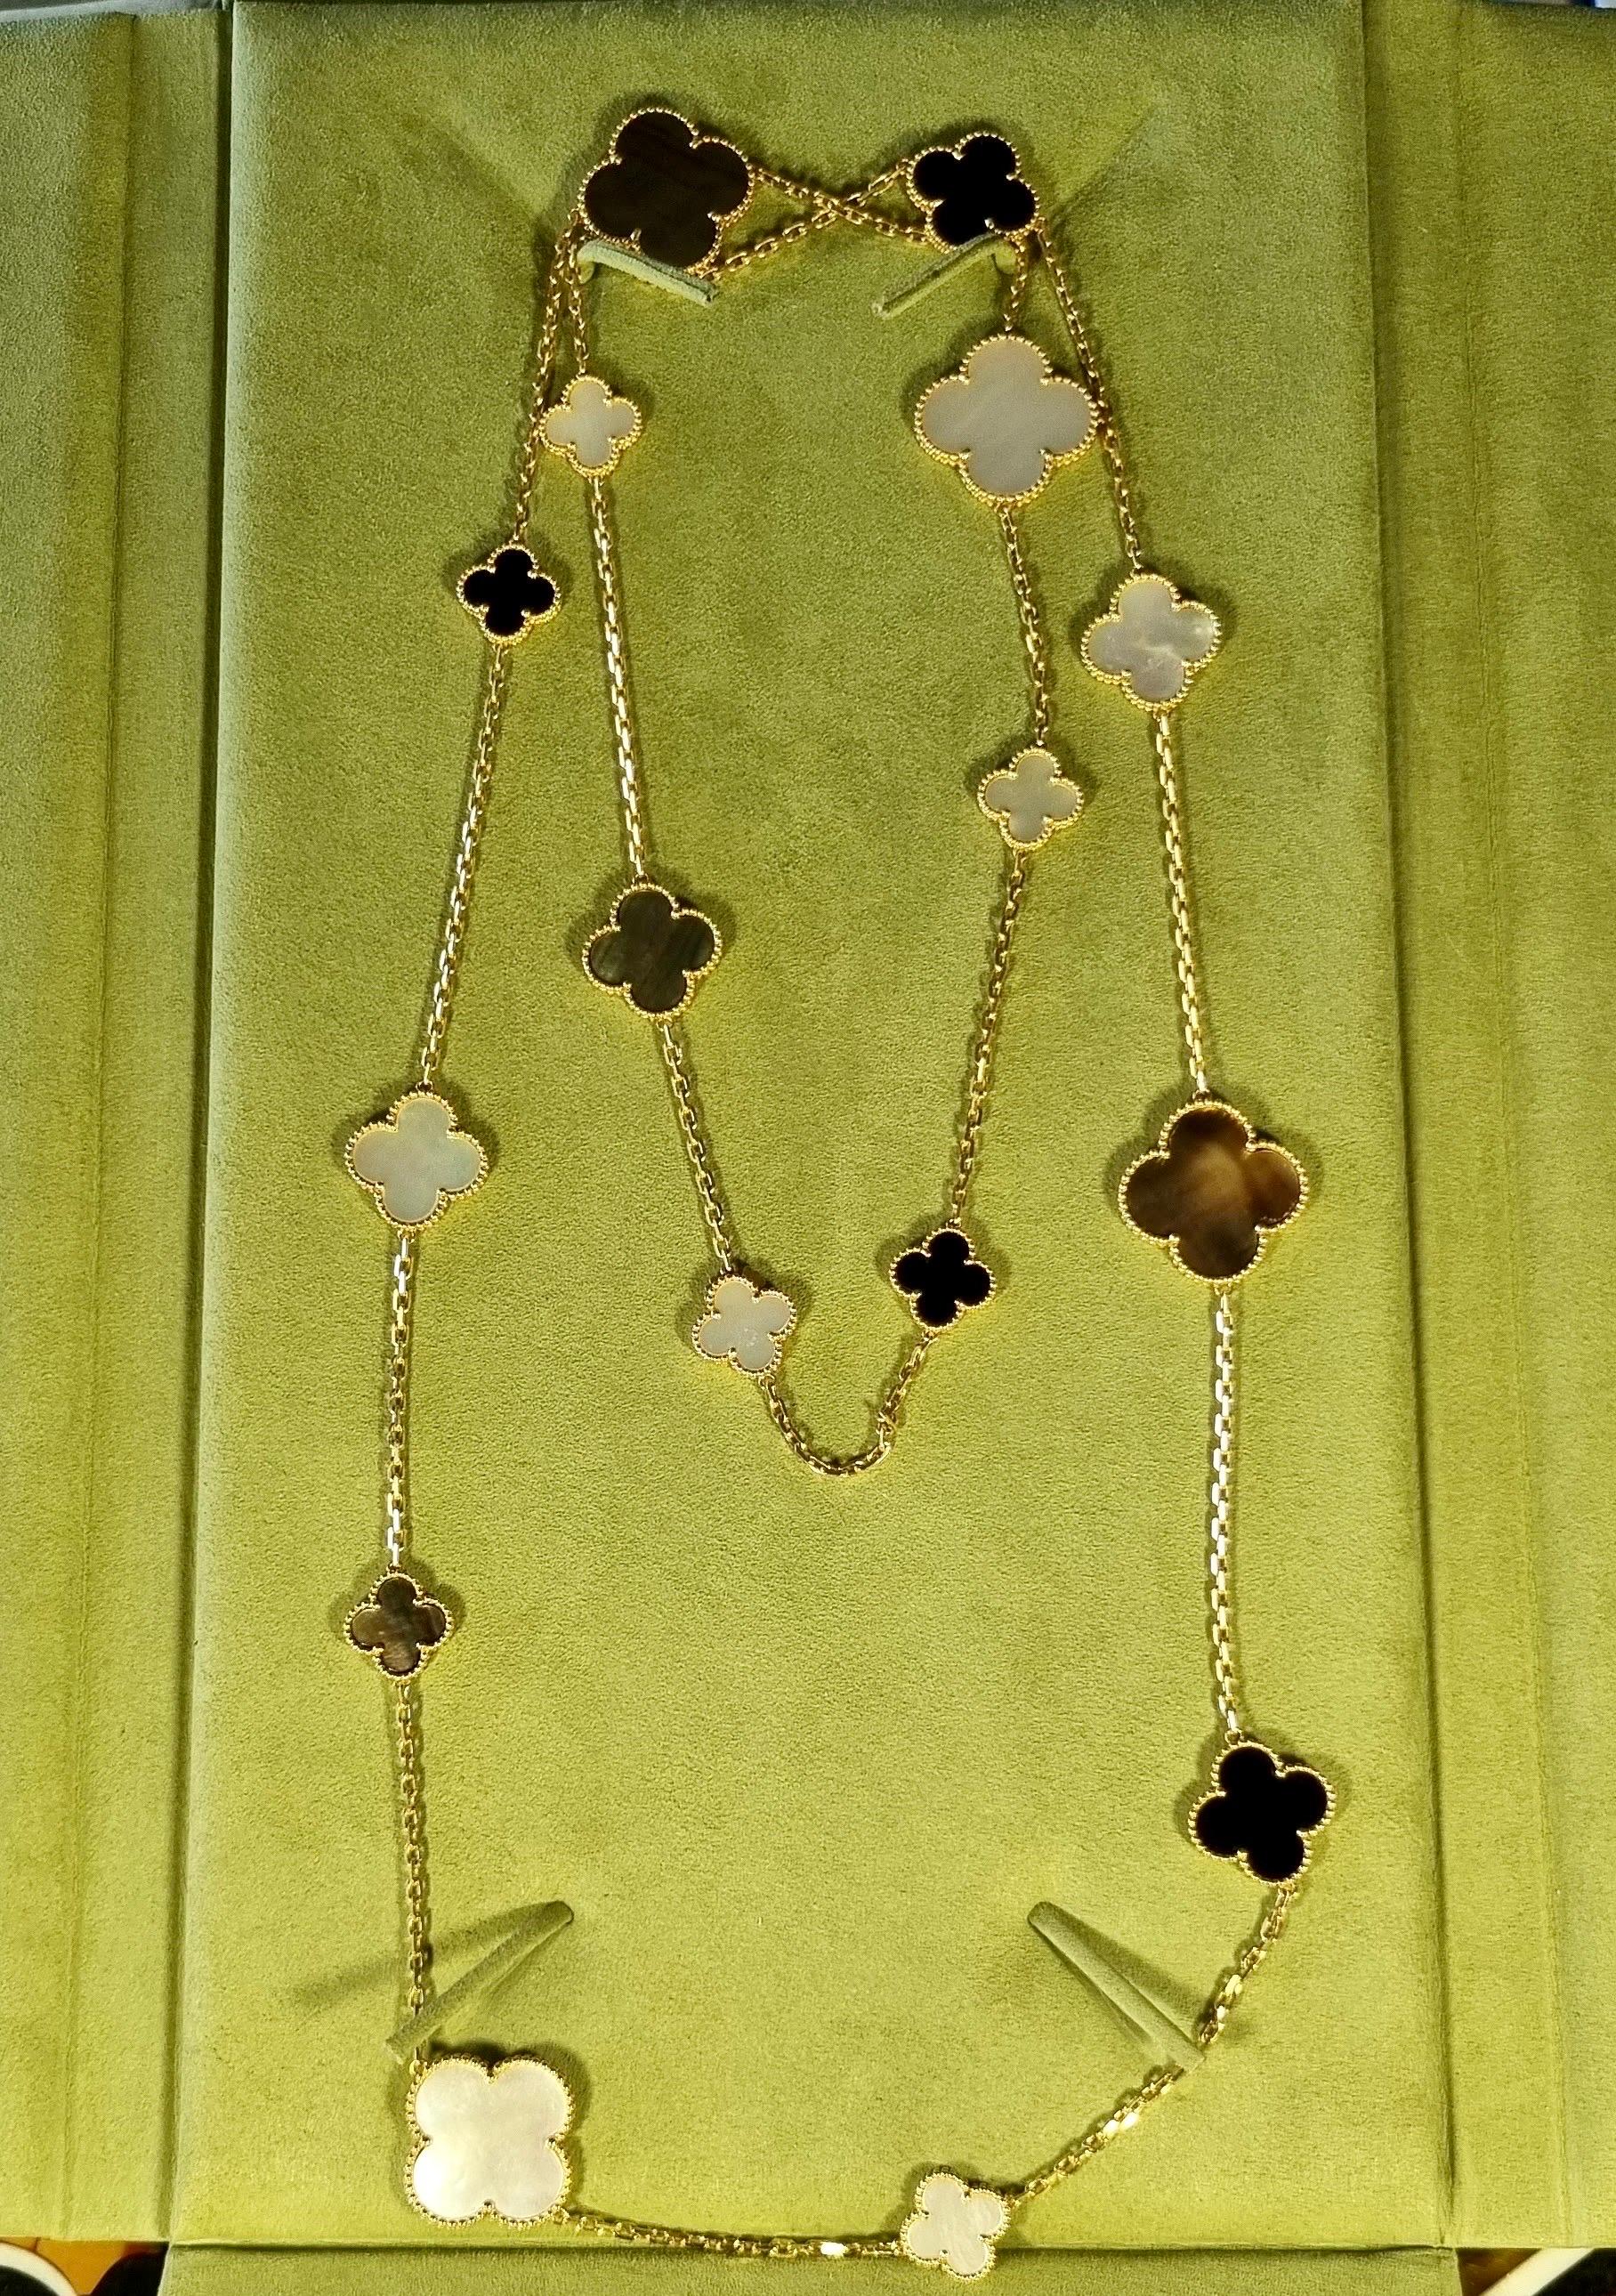 Superbe collier en or jaune 18 carats Van Cleef & Arpels de la collection Magic Alhambra. Le collier comprend 16 motifs iconiques de trèfle à 4 feuilles alternant en taille, sertis de nacre blanche, de nacre grise et d'onyx et complétés par un bord